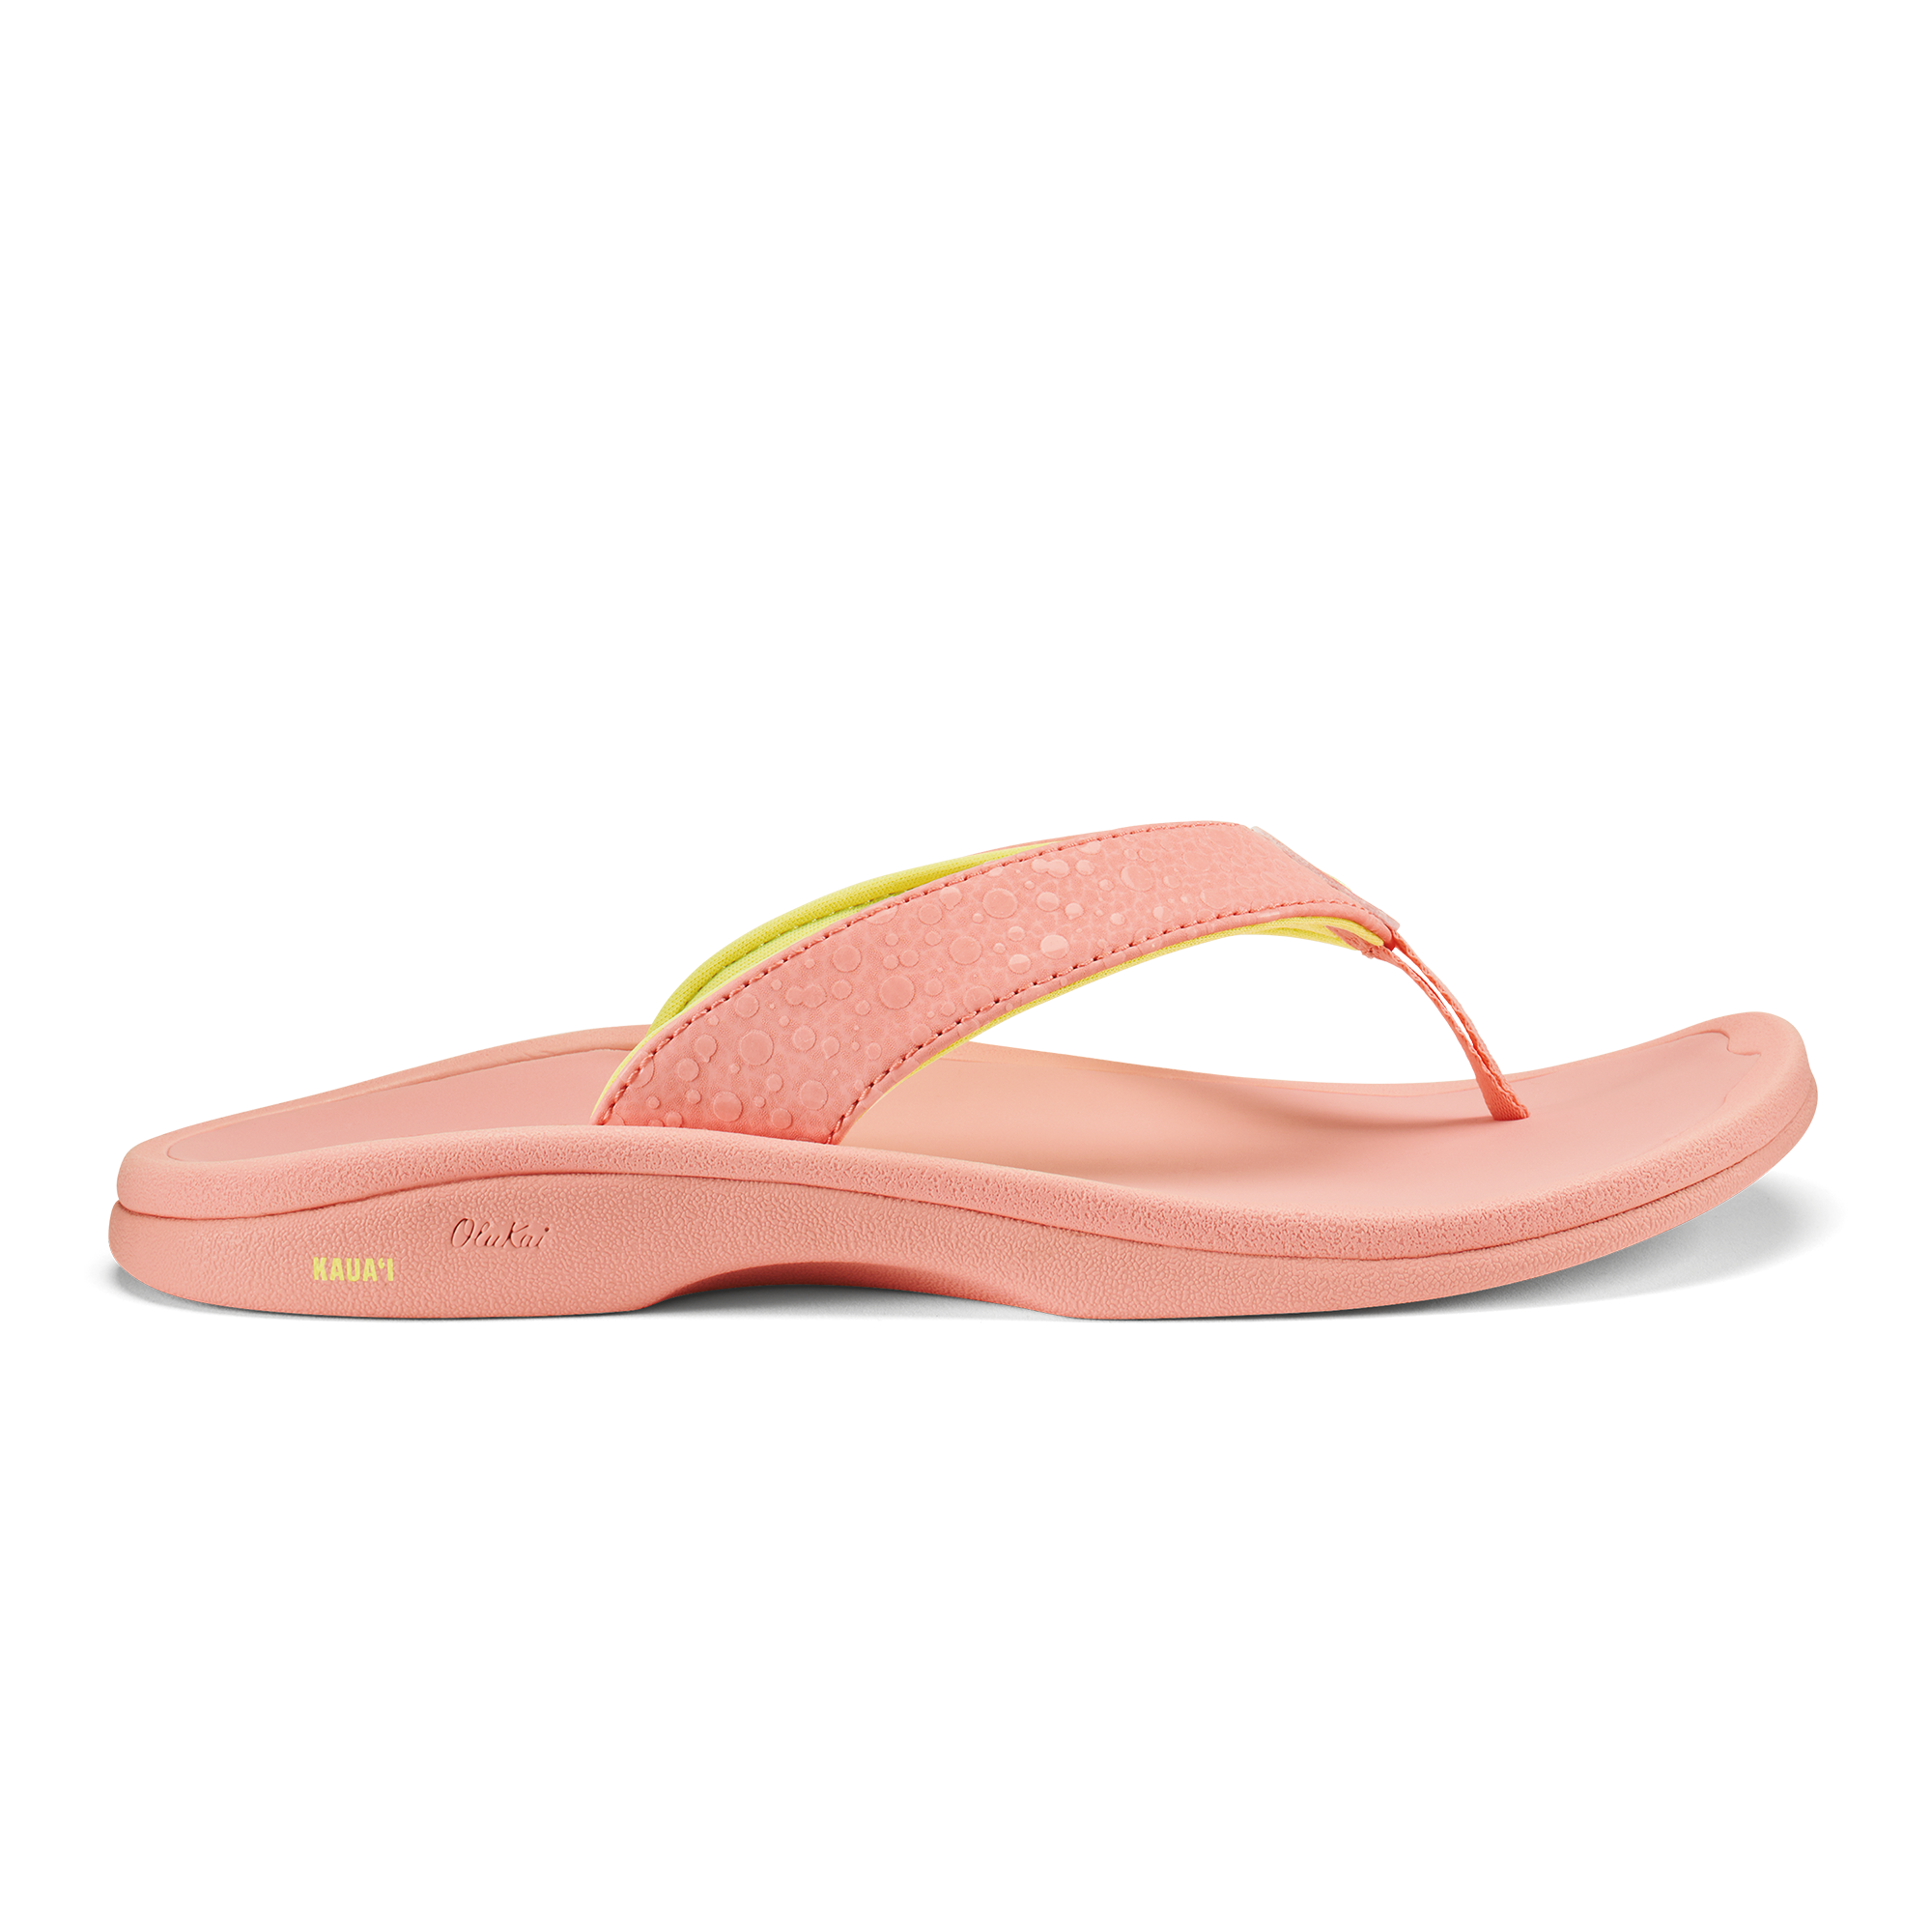 ‘Ohana Women's Beach Sandals & Flip Flops - Guava Jelly | OluKai